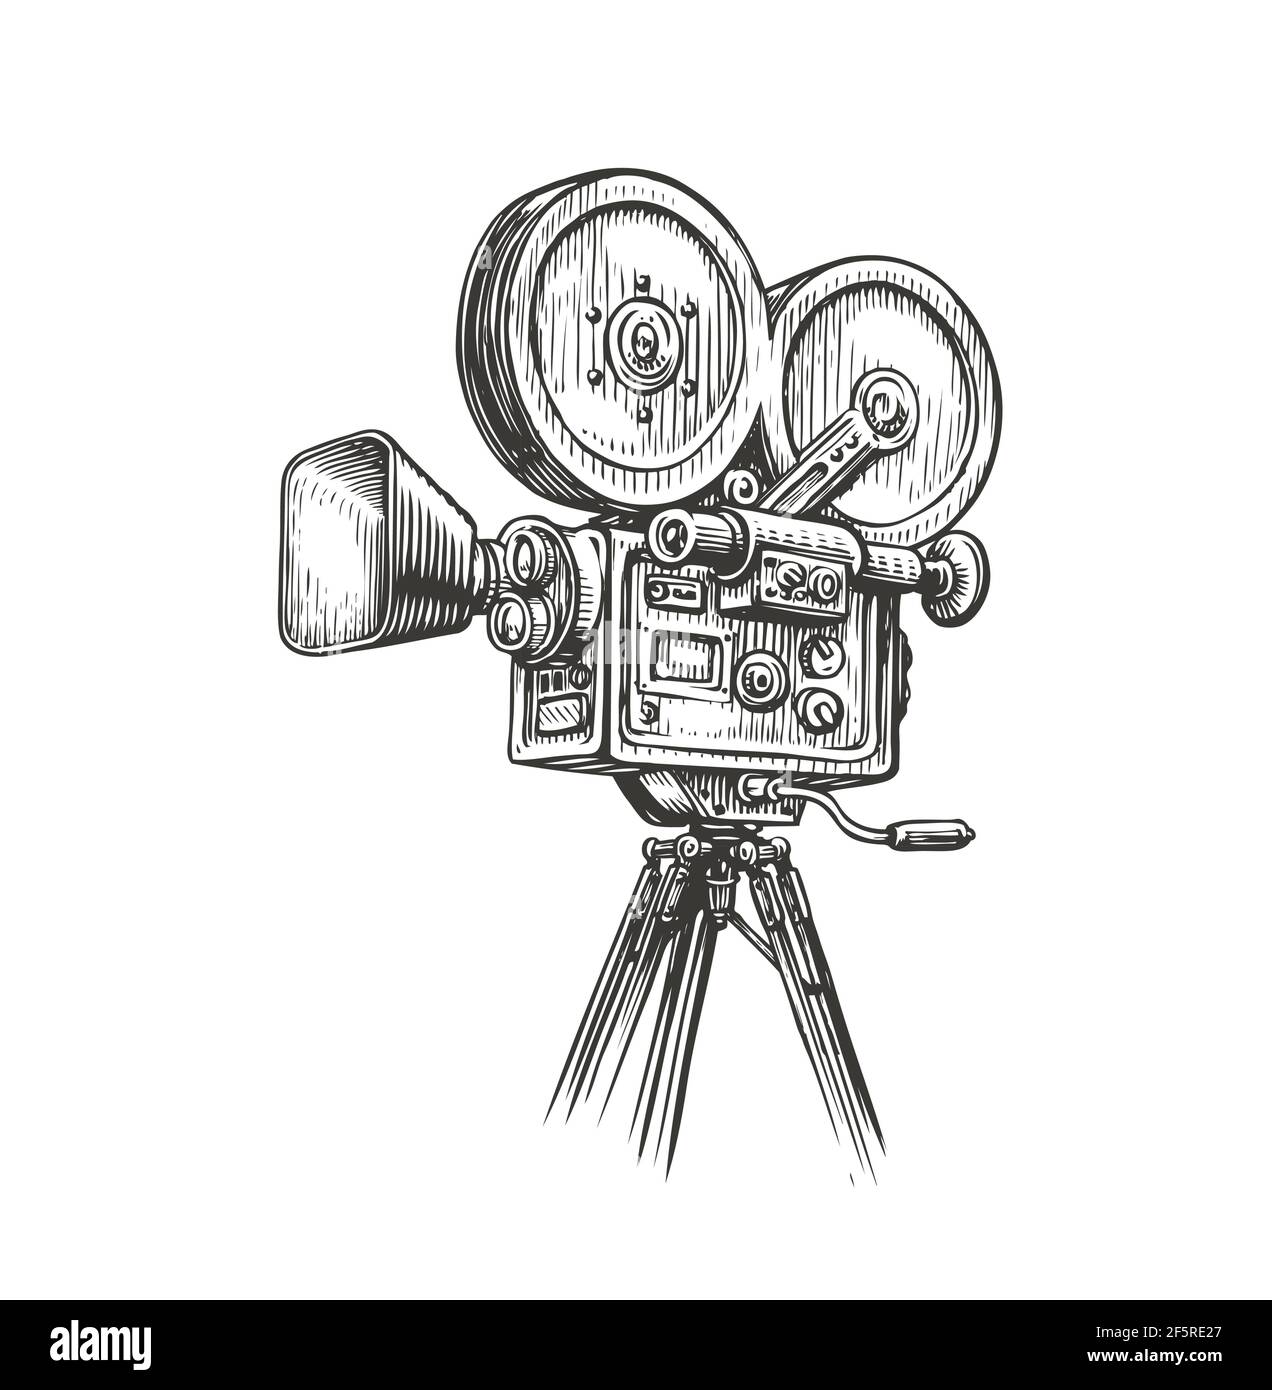 Schizzo di una telecamera di film vecchio stile. Illustrazione vettoriale vintage del concetto di produzione video Illustrazione Vettoriale